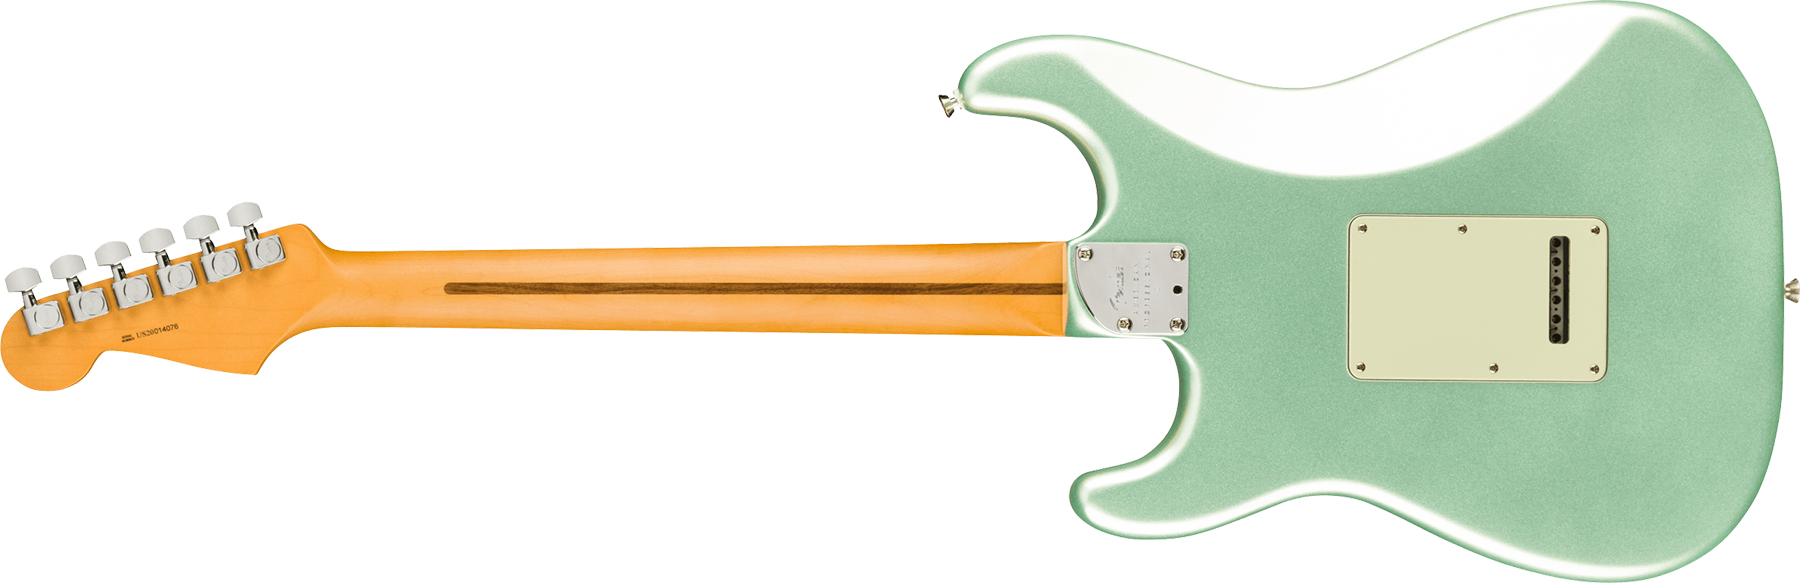 Fender Strat American Professional Ii Lh Gaucher Usa Mn - Mystic Surf Green - Linkshandige elektrische gitaar - Variation 1